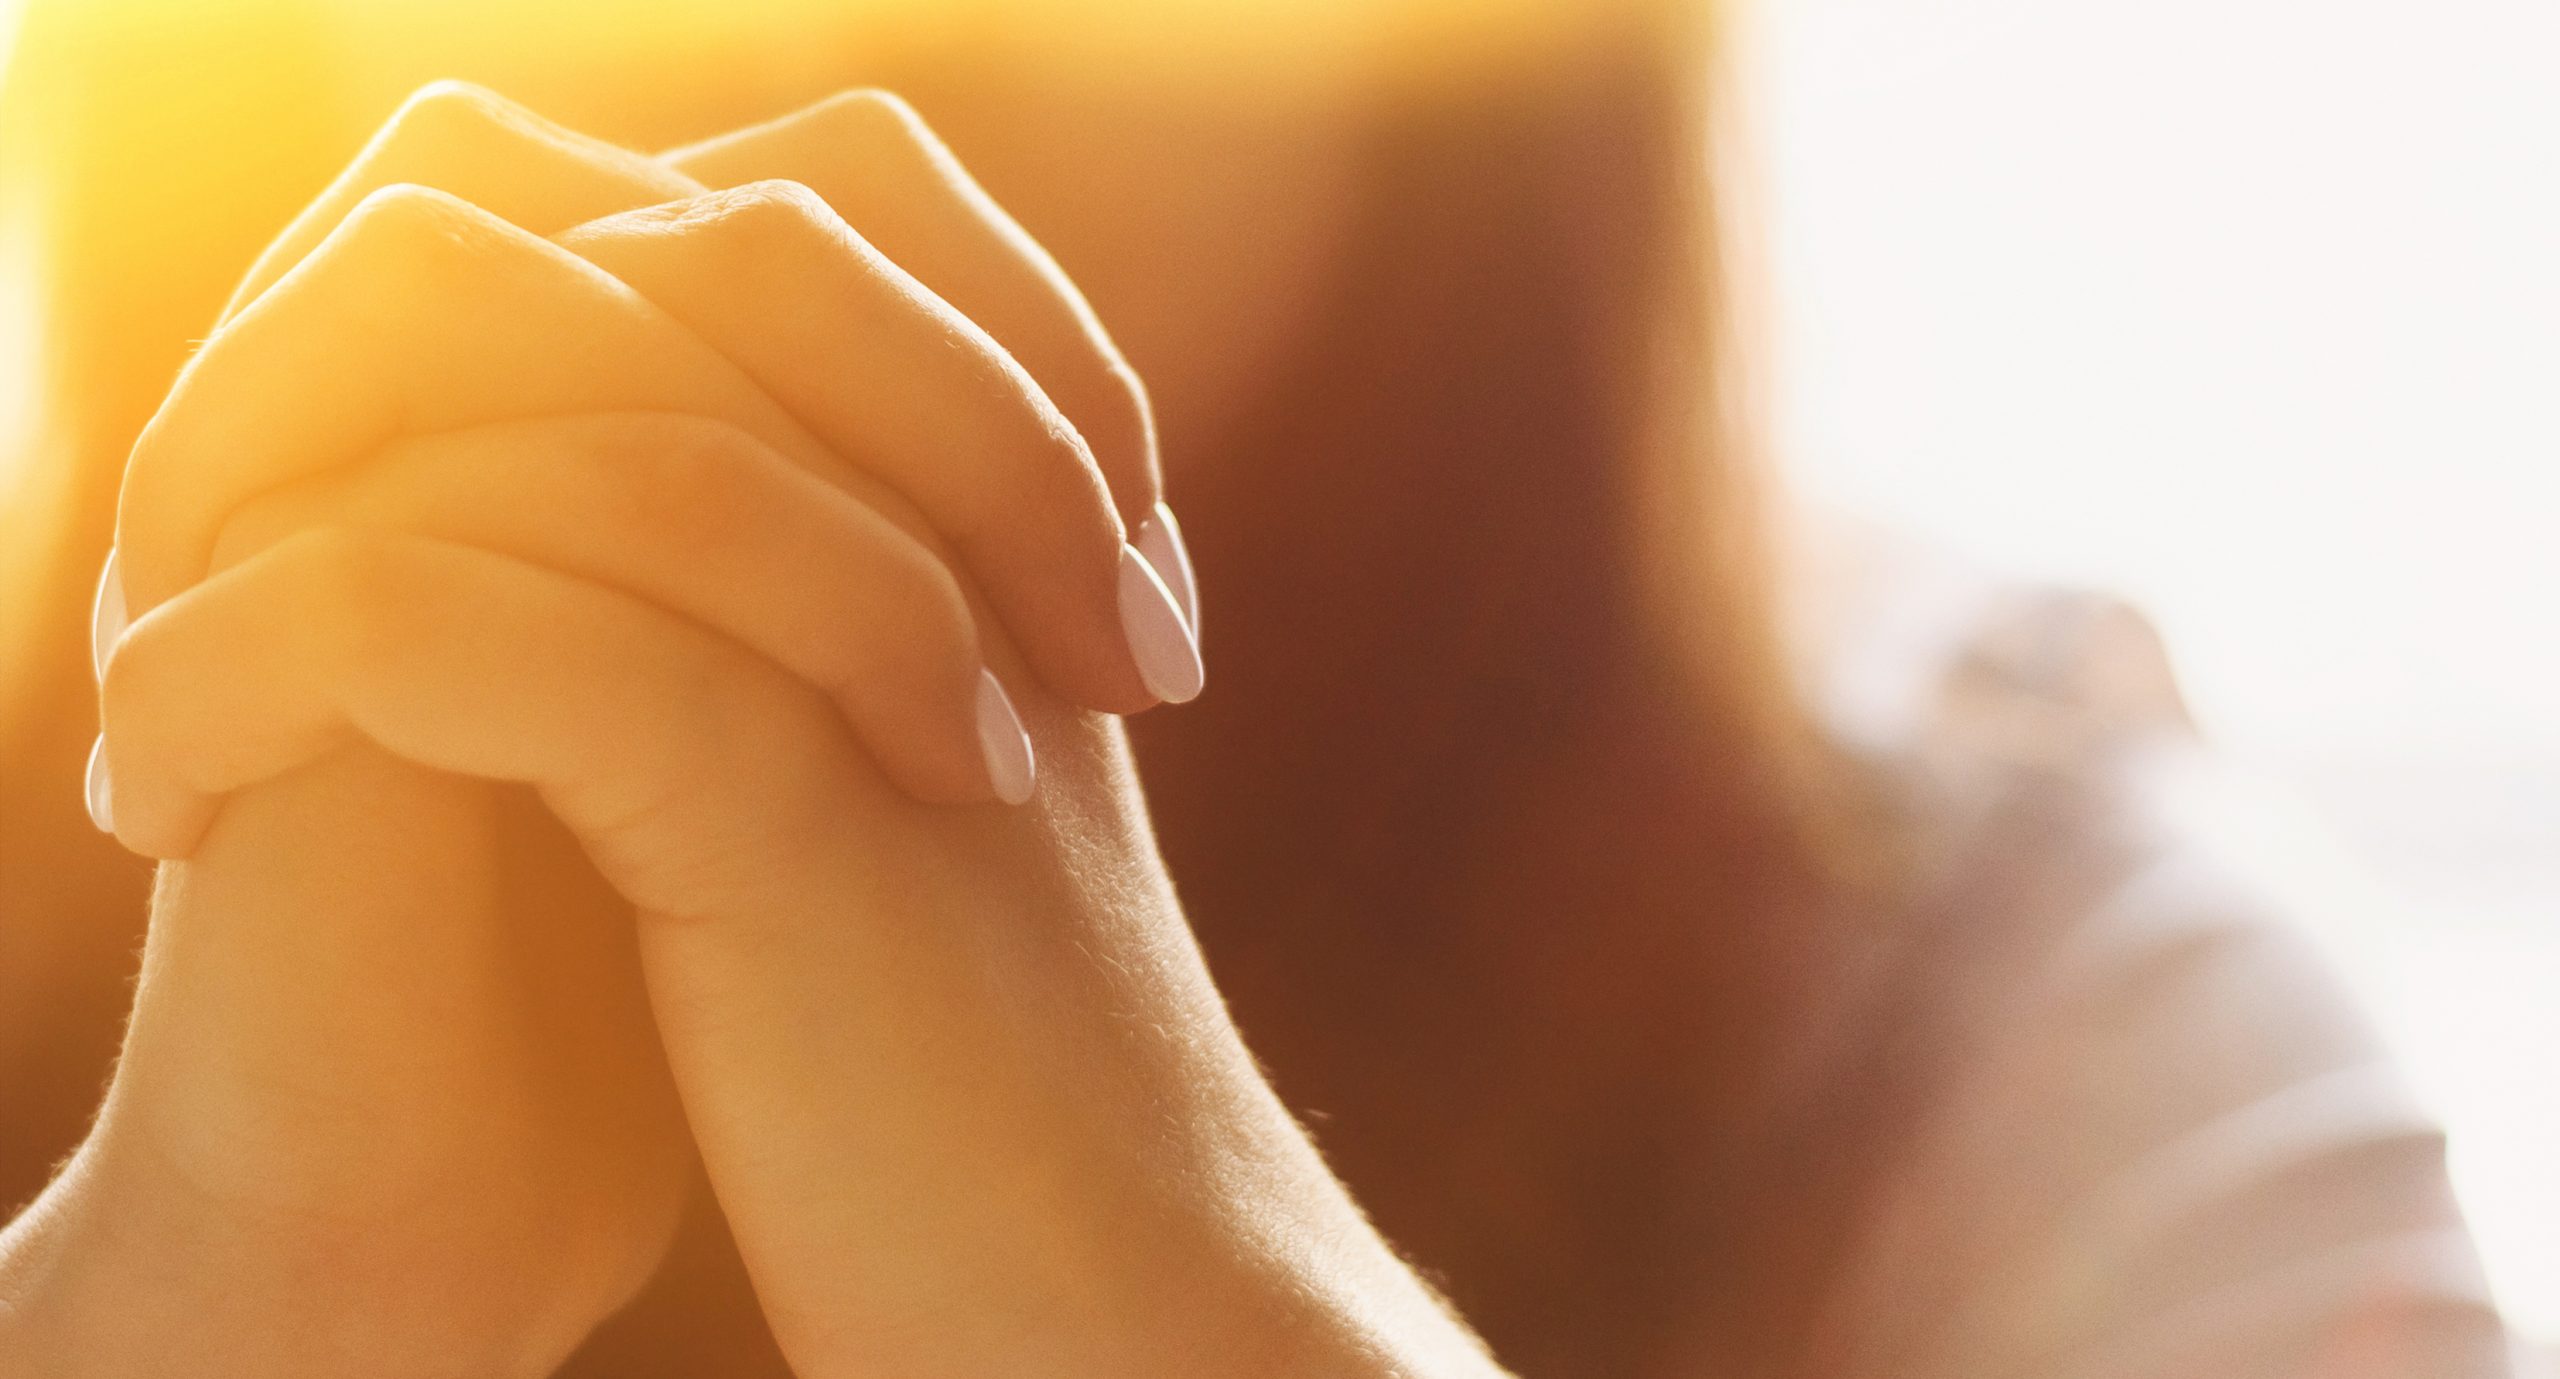 Girl folds her hands in prayer.